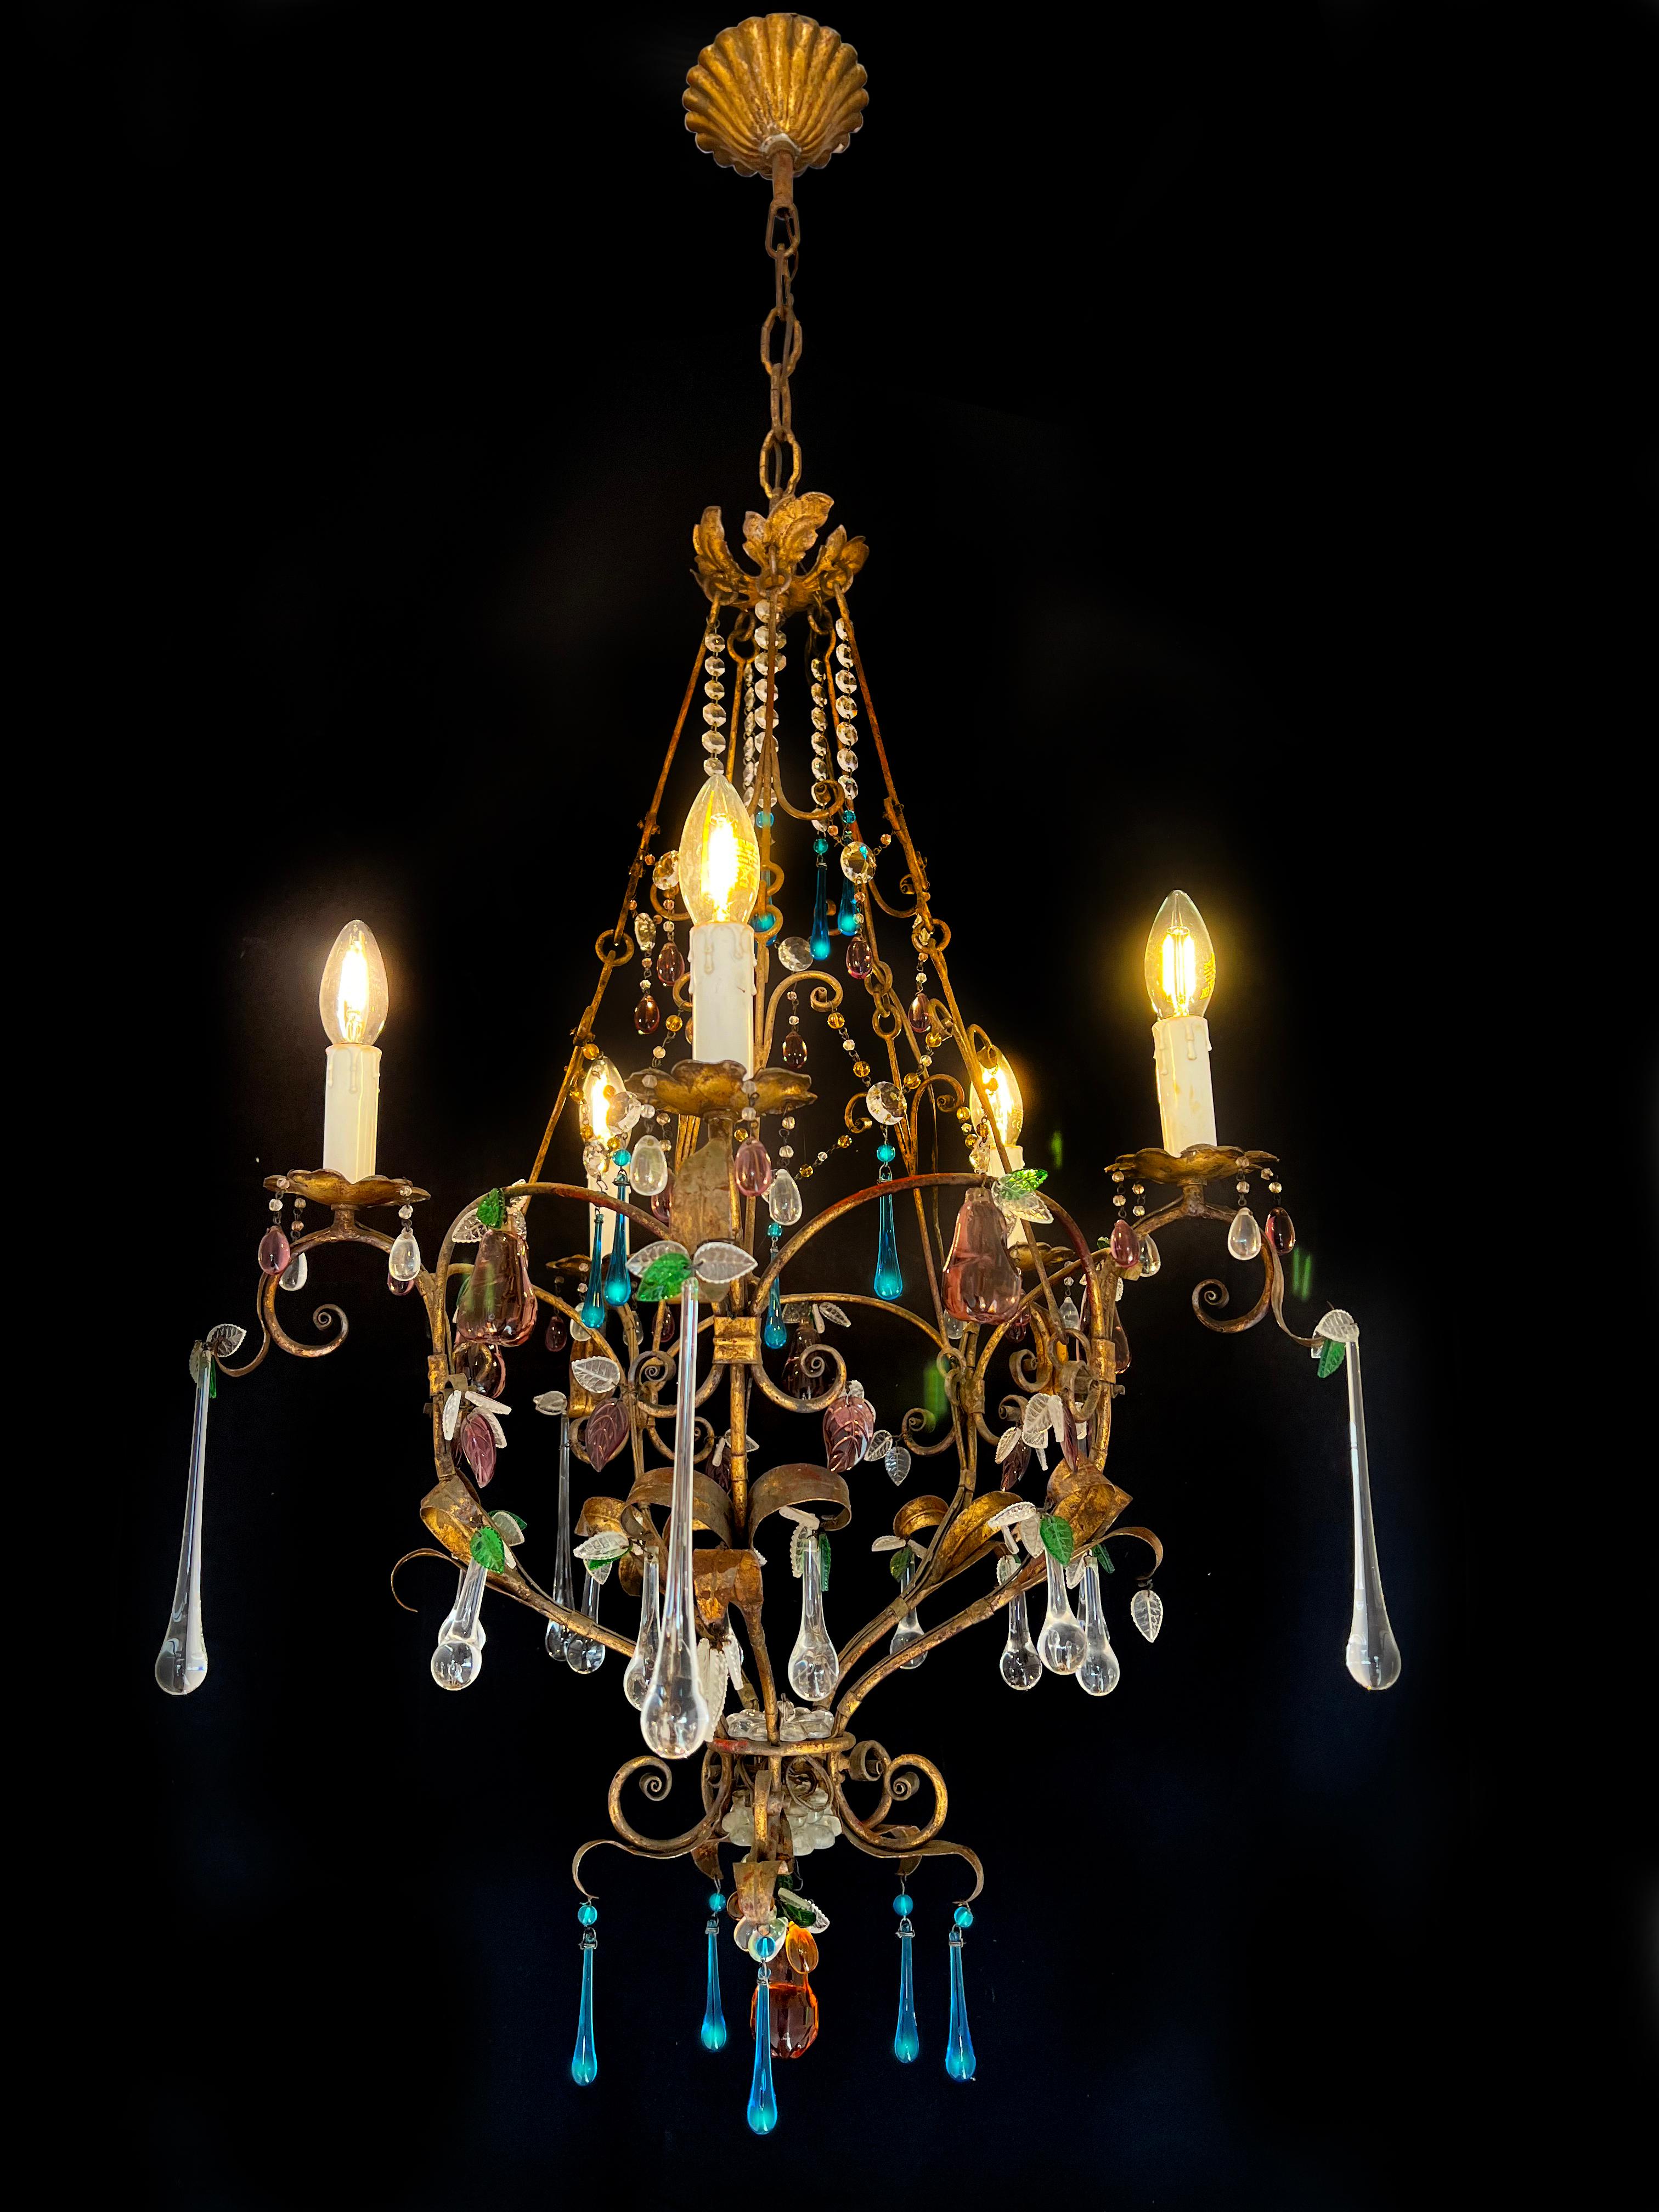 Fascinant lustre de Murano inspiré par la divine Betty Davis.
Hauteur 120 cm, diamètre 55 cm, hauteur sans chaîne 100 cm. Cinq lampes E14